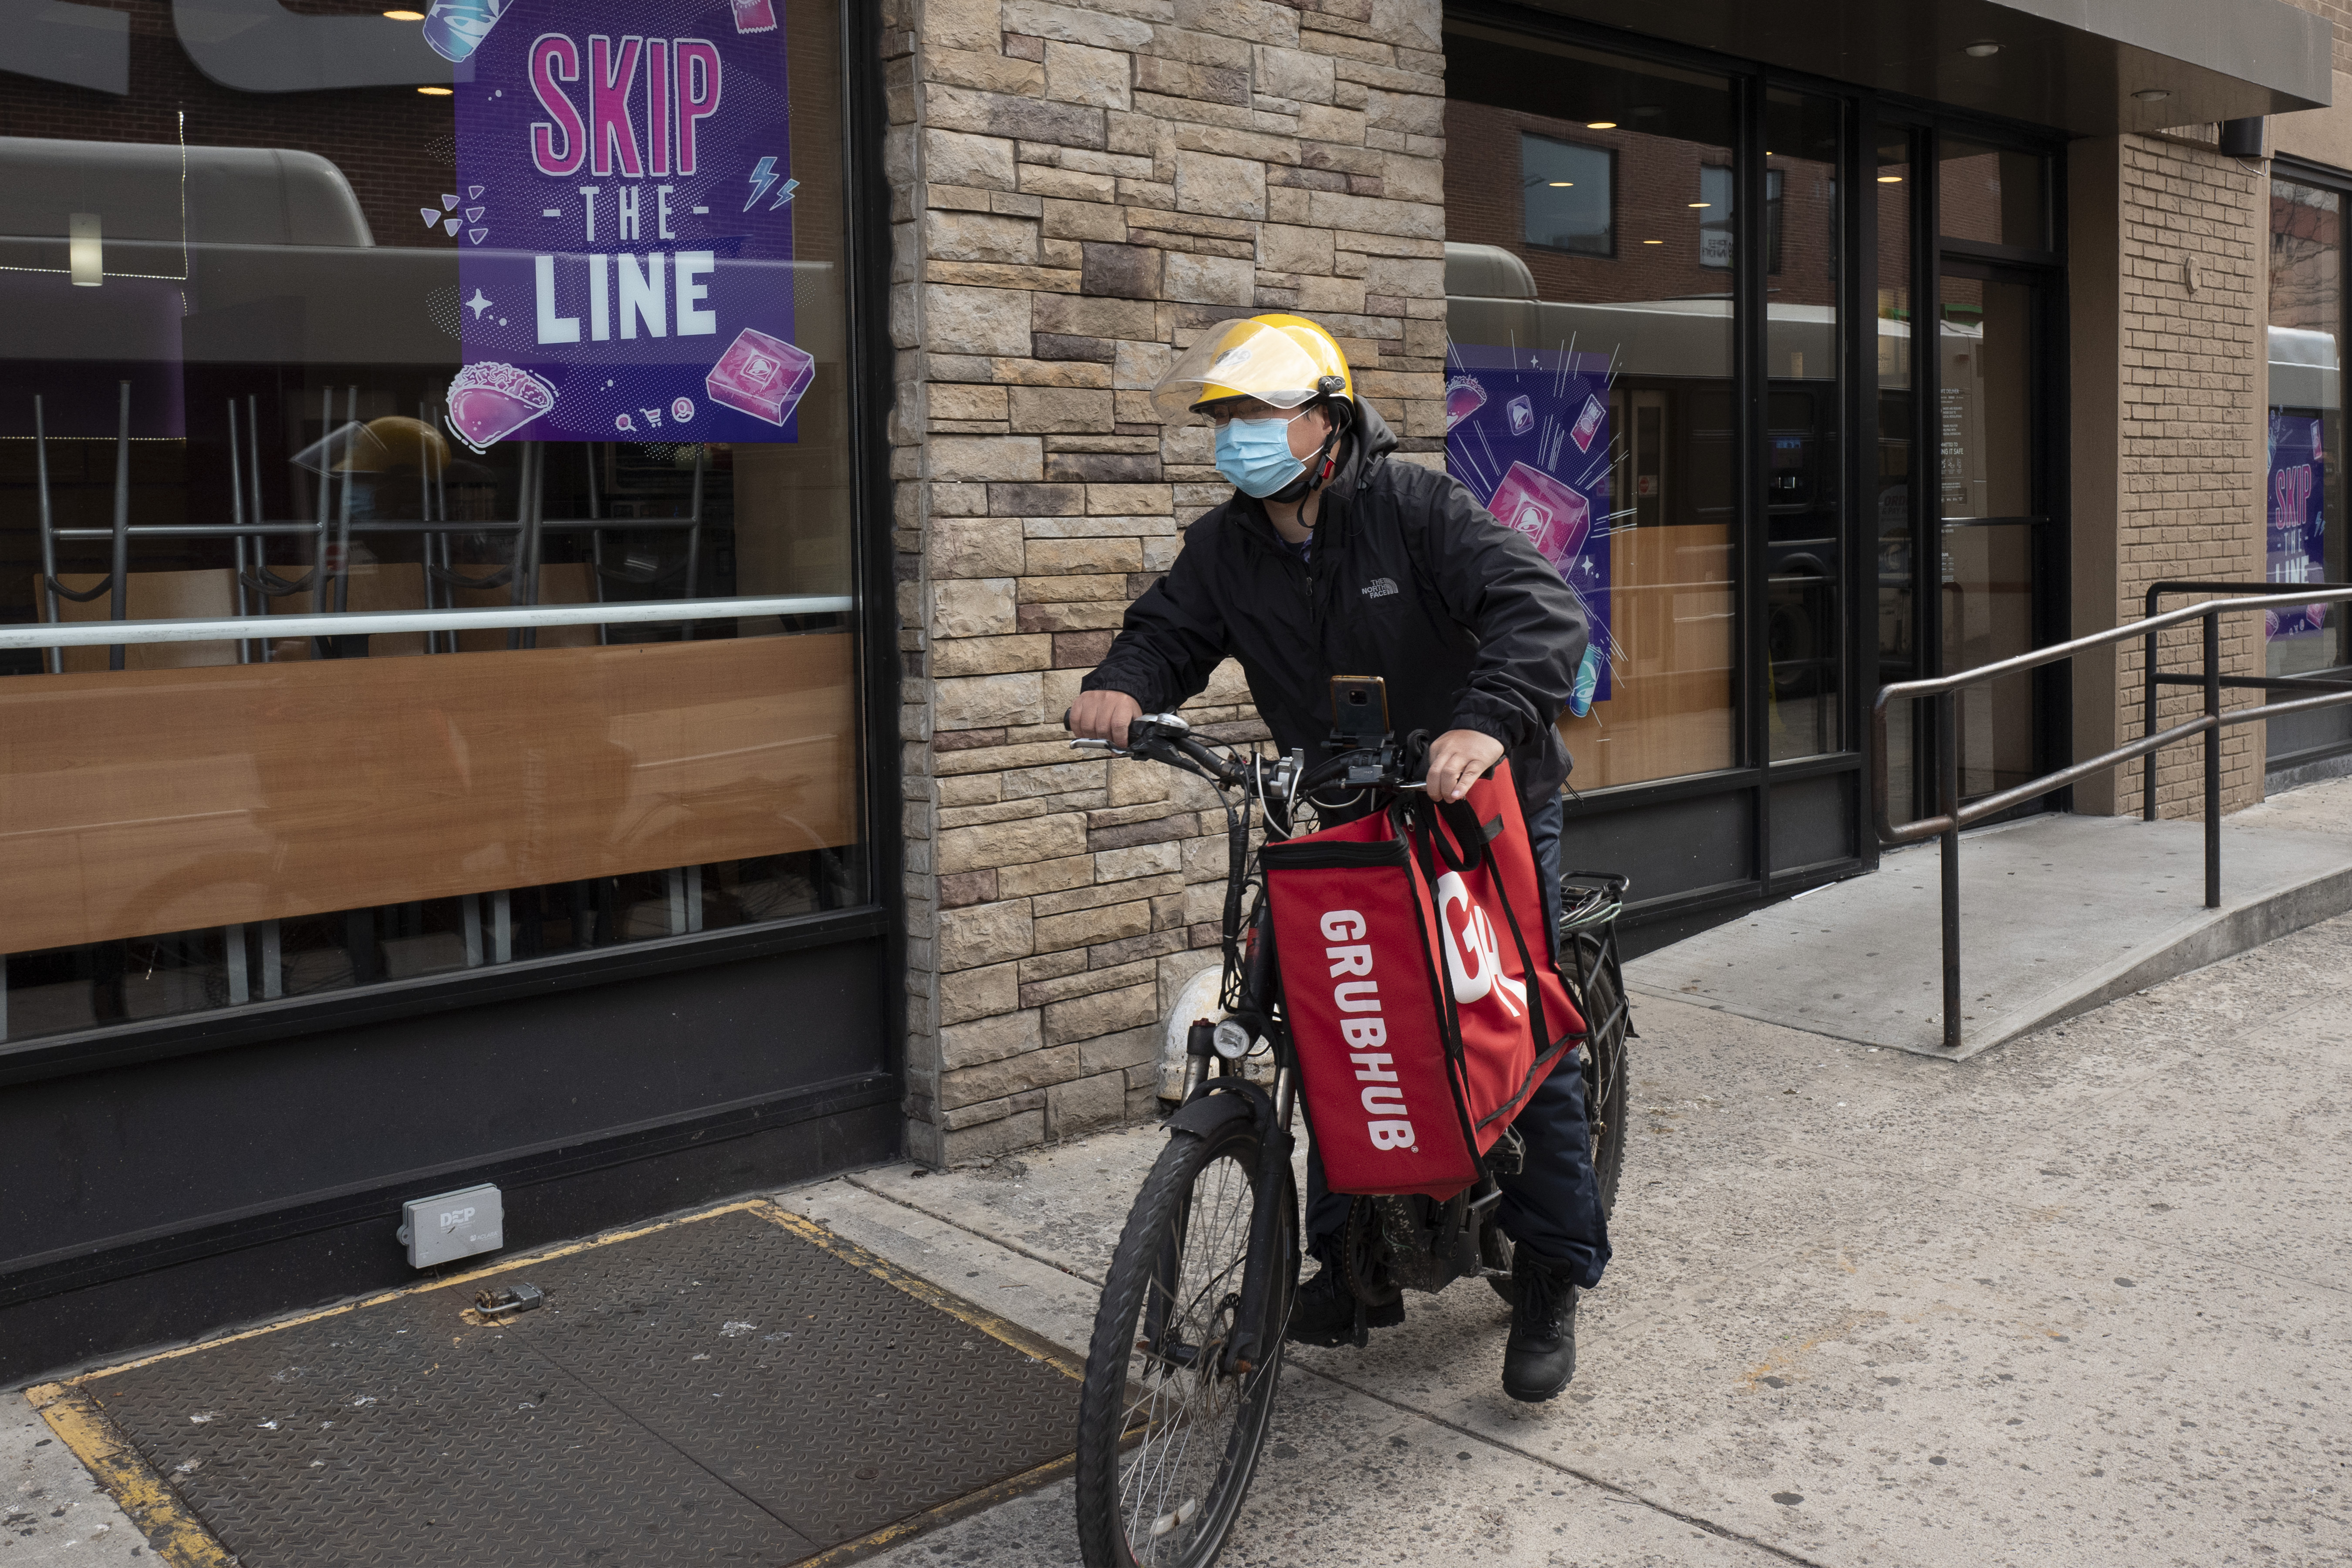 DoorDash, Uber sue NYC on deliverer wages